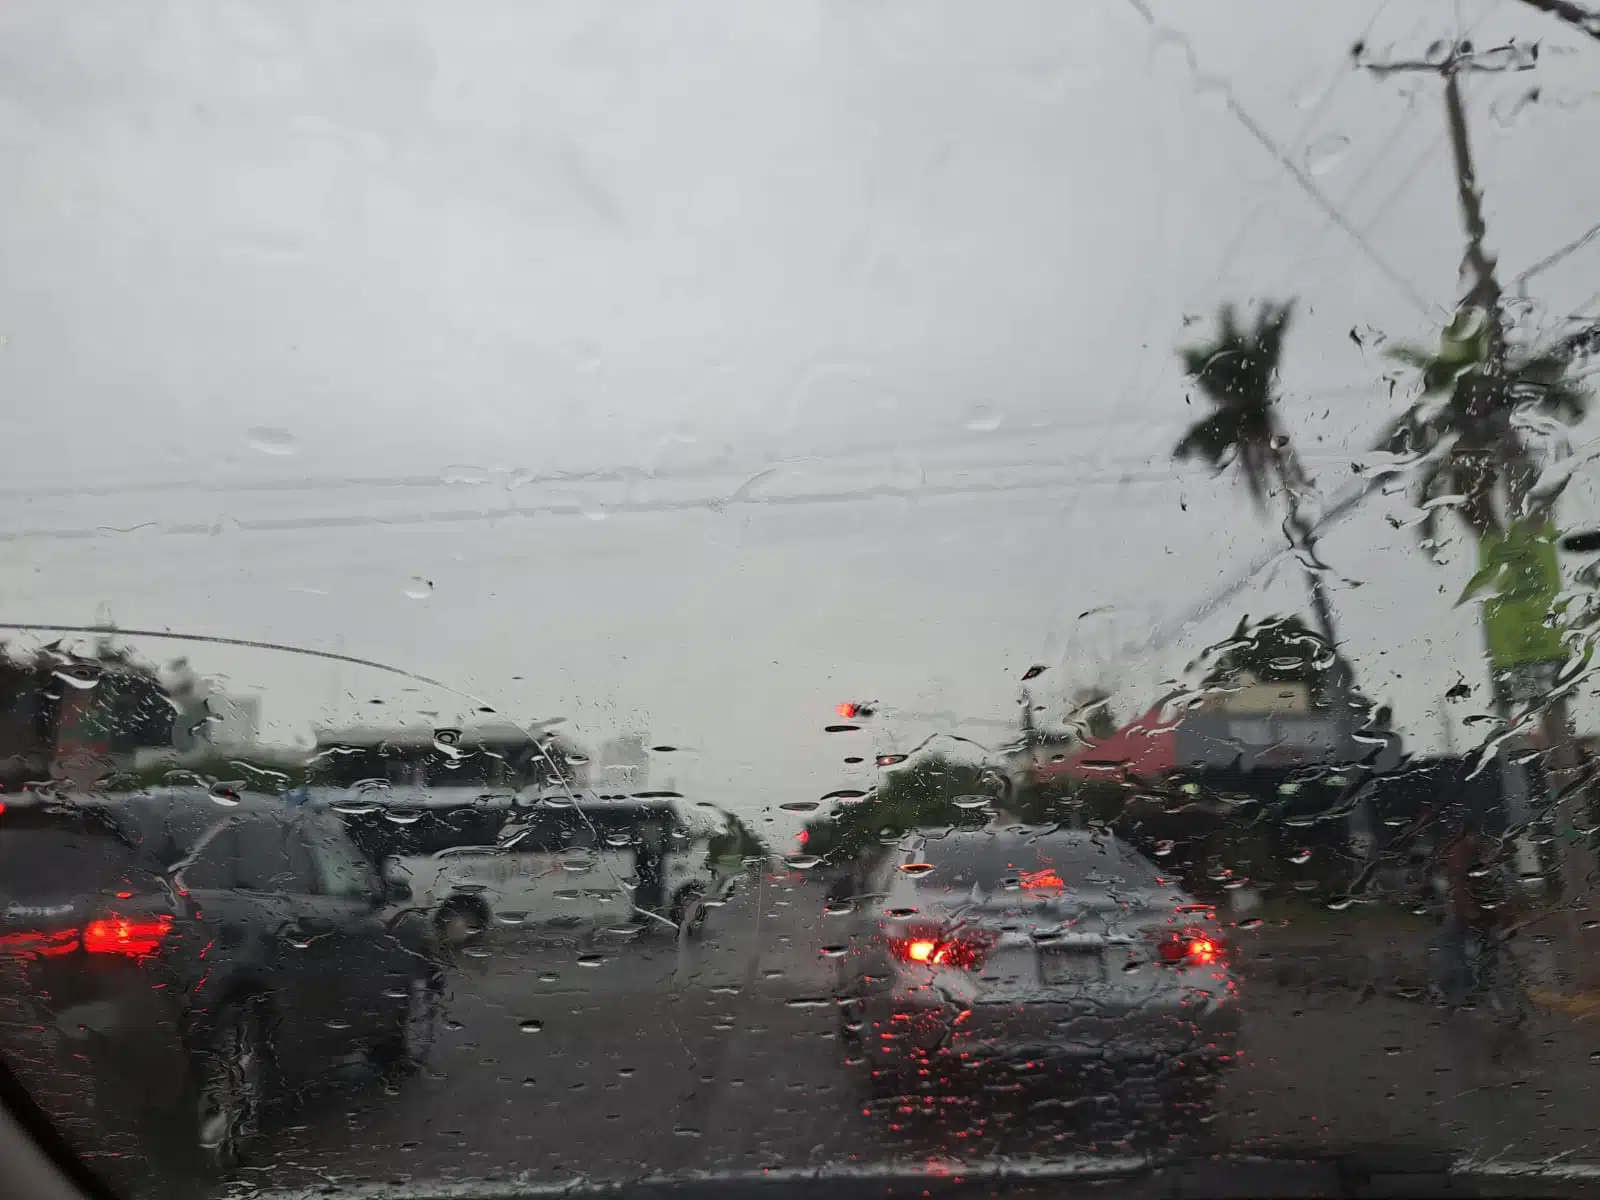 Gotas de lluvia en el cristal de un auto que va transitando por una avenida. Hay carros frente a este y el cielo se ve nublado